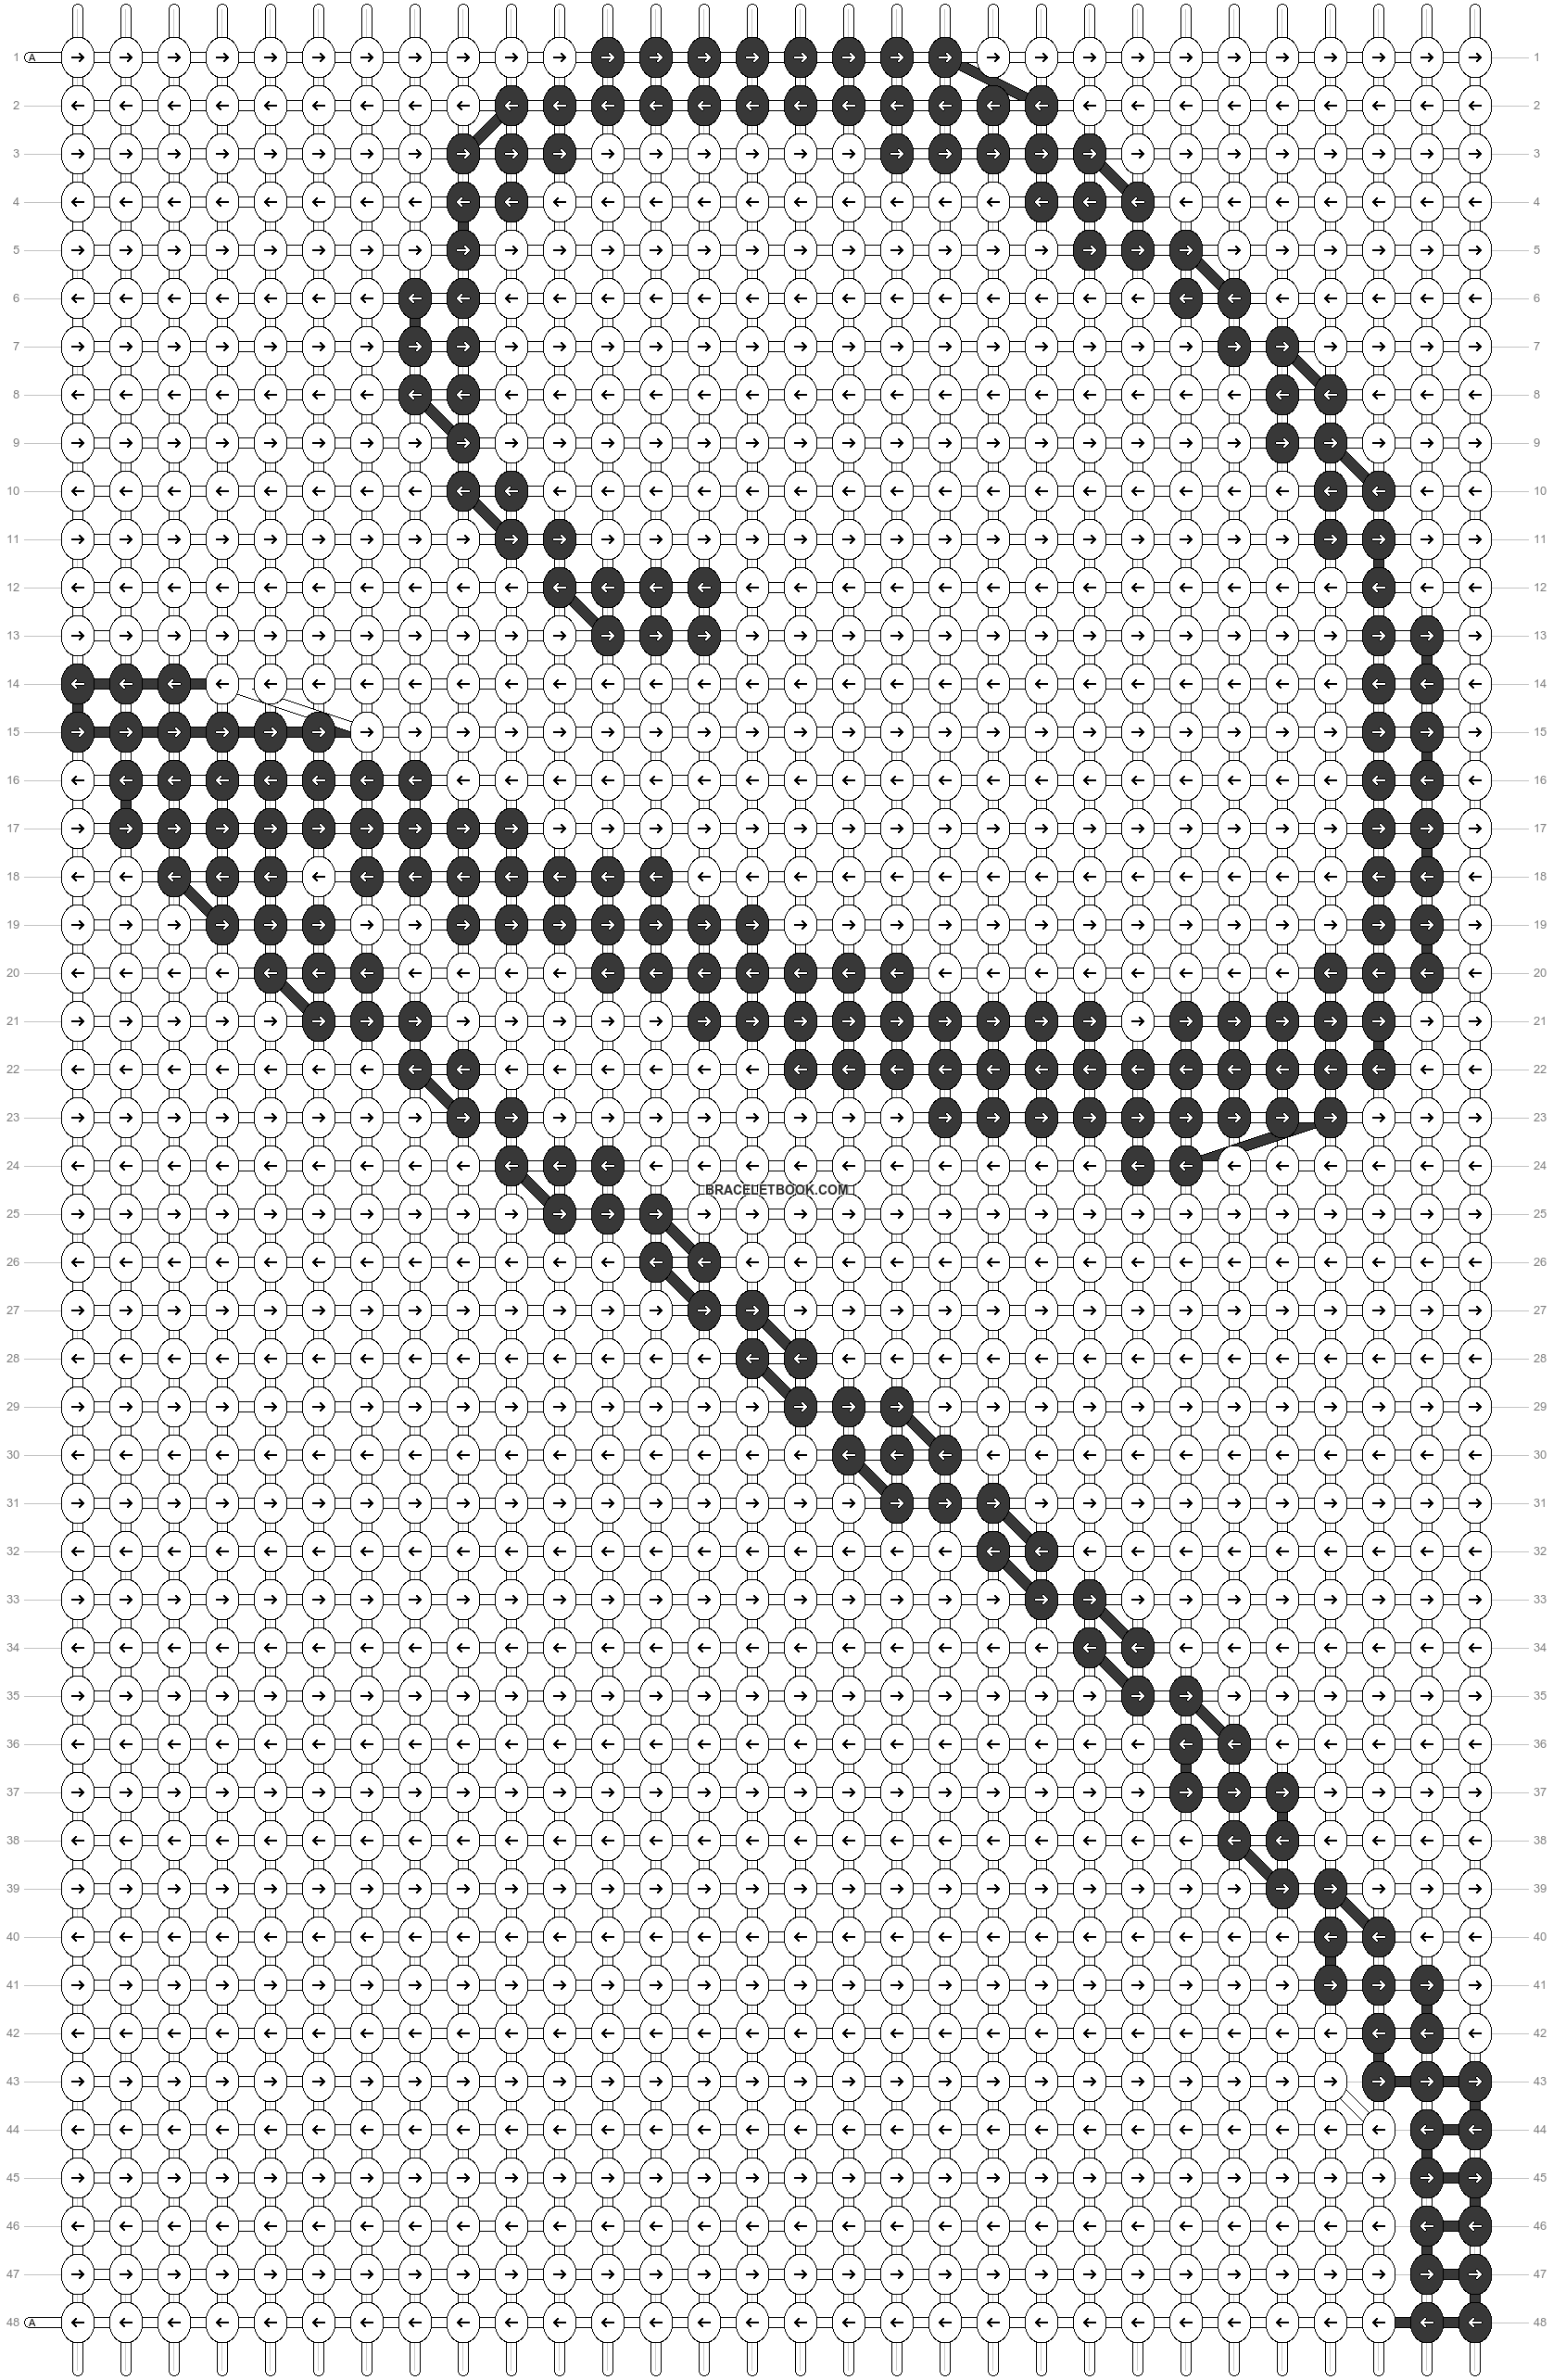 Alpha pattern #75282 | BraceletBook